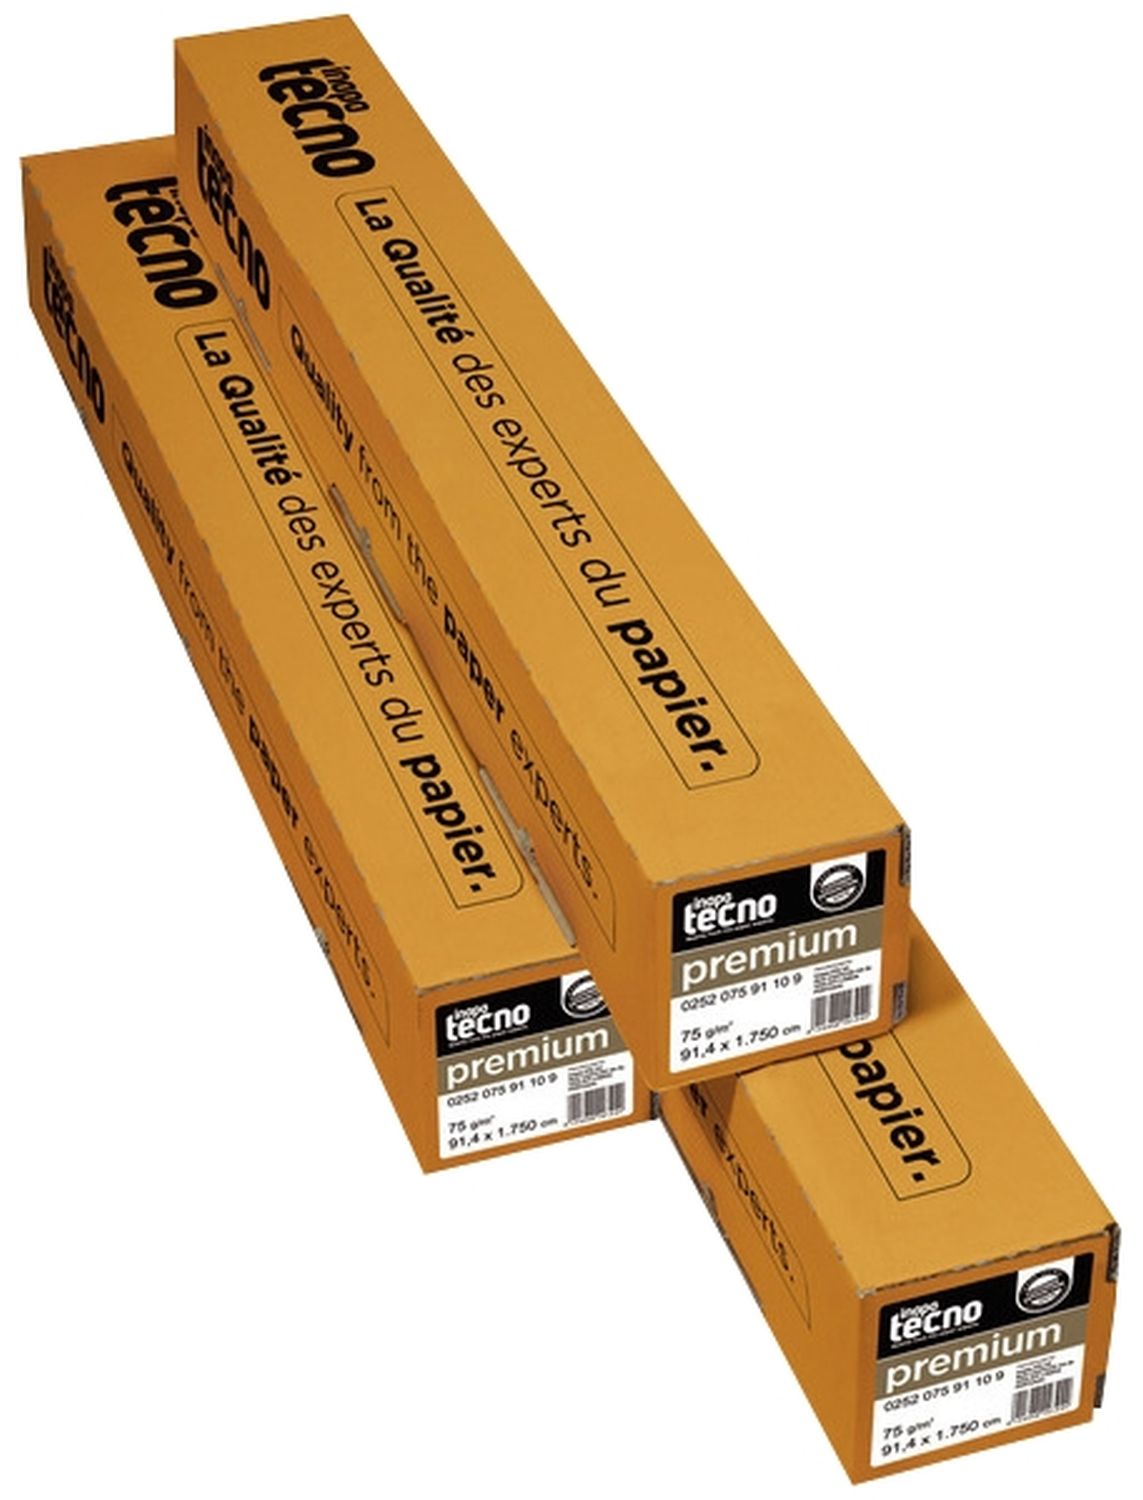 Plotterpapier tecno premium 41000000158 für Großformatdruck, 420 mm x 175 m (A2), 75 g/qm, Kern-Ø 7,50 cm, 2 Rollen